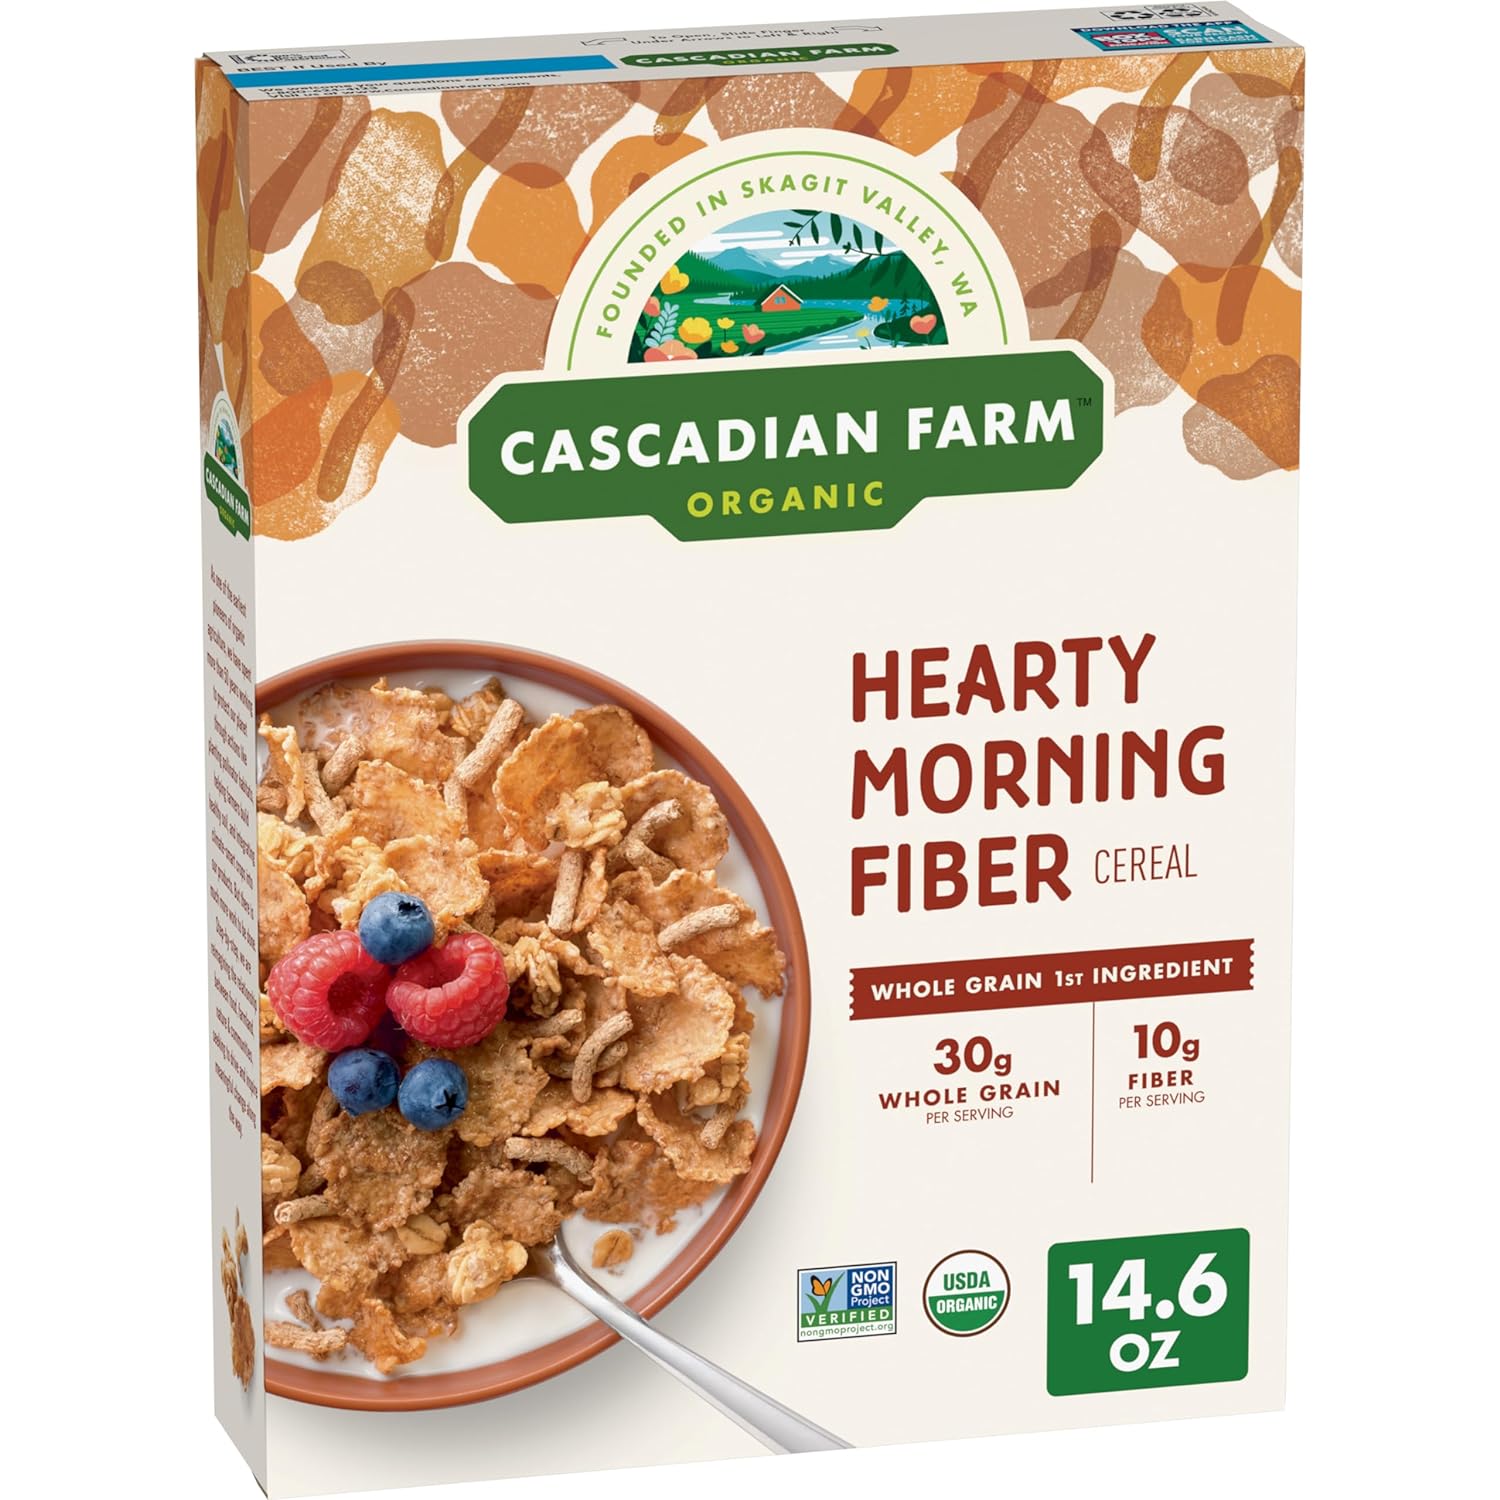 Cascadian Farm Organic Hearty Morning Fiber Cereal, Non-GMO, 14.6 oz